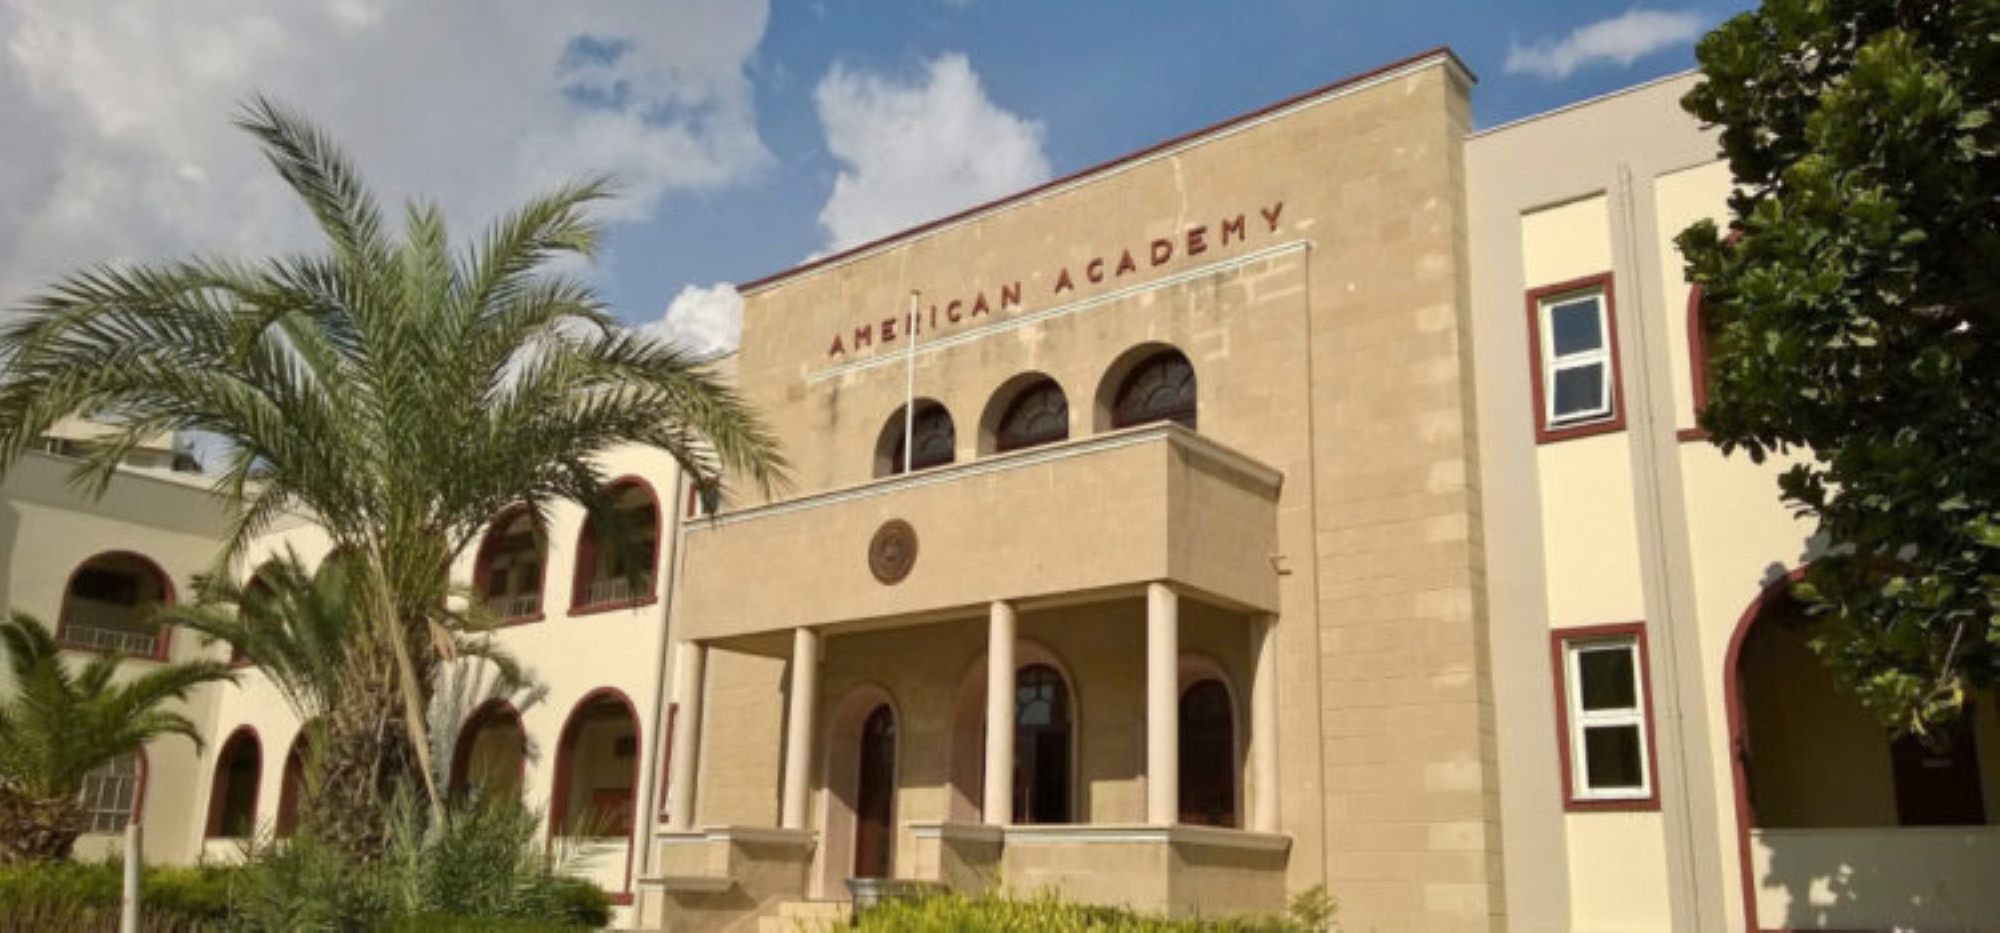 Κρούσματα στο Νηπιαγωγείο της Αμερικάνικης Ακαδημίας Λάρνακας -Δηλώσεις στο LarnakaOnline από τον εκτελεστικό διευθυντή του σχολείου